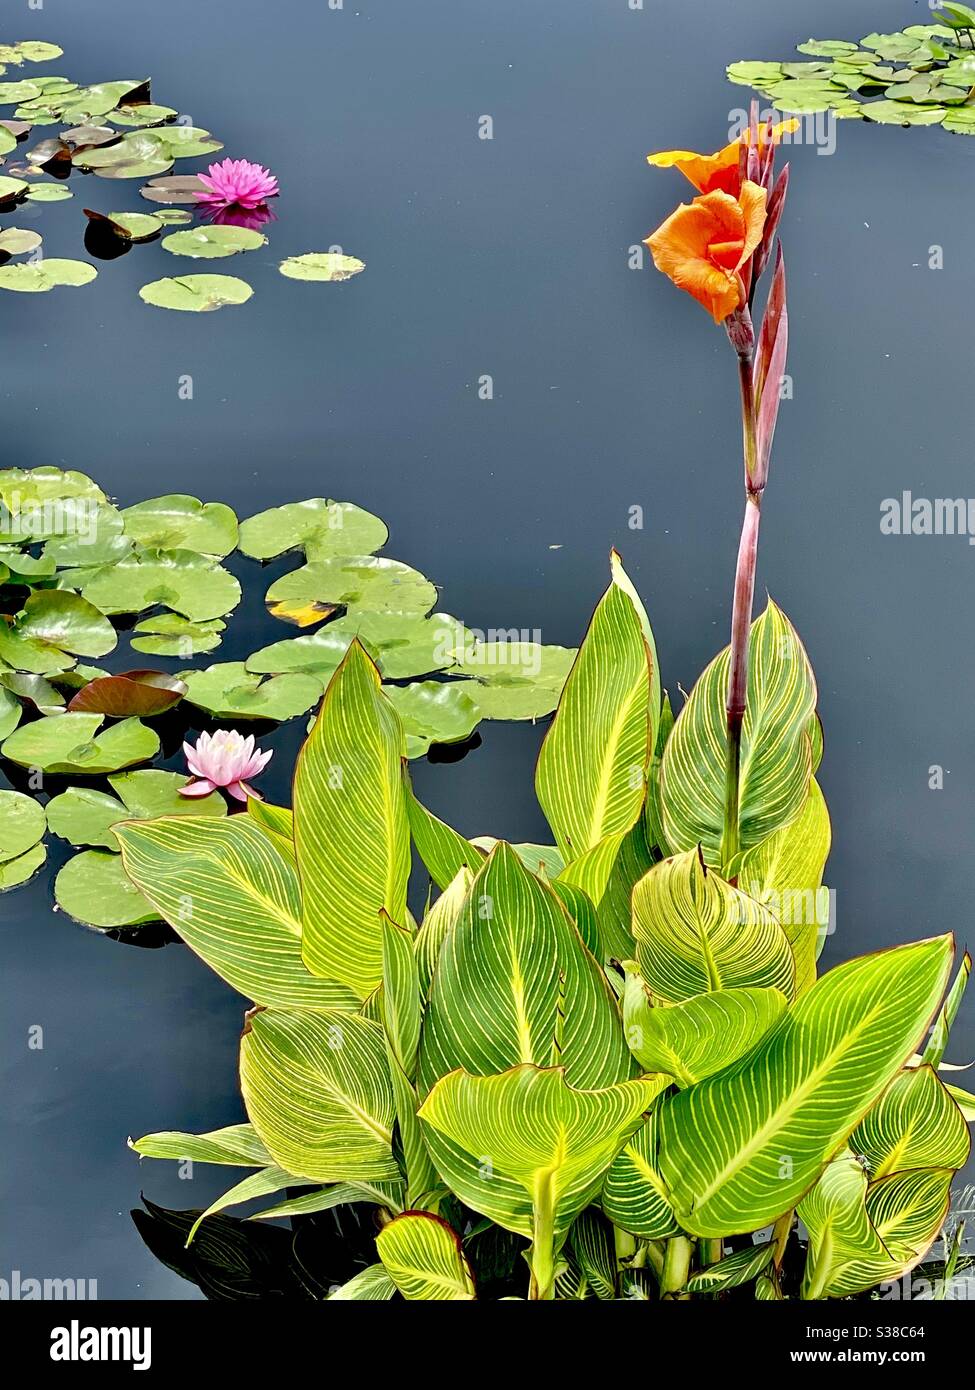 Singular flower stalk in water garden Stock Photo